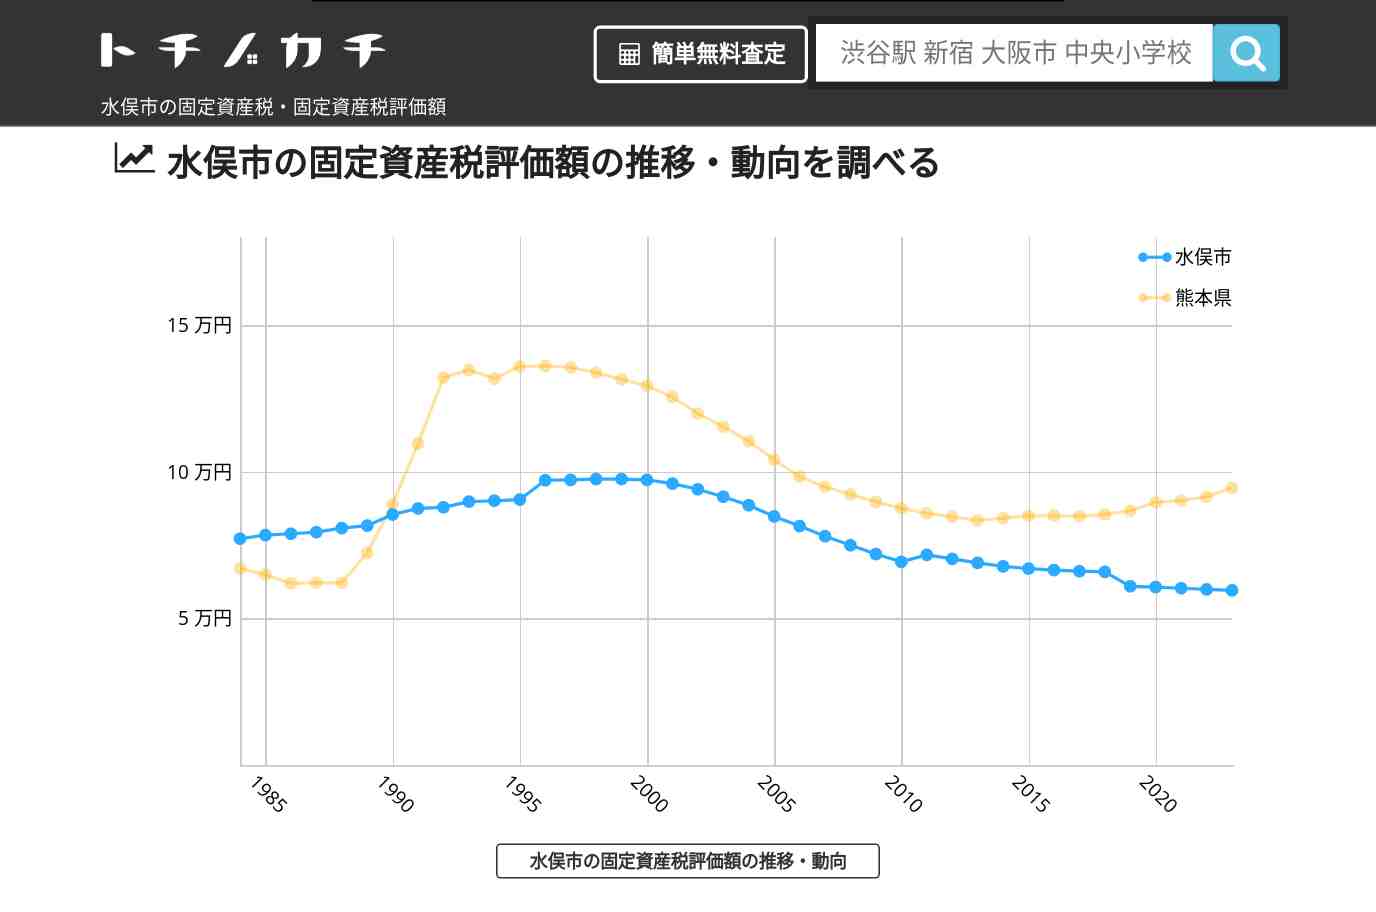 水東小学校(熊本県 水俣市)周辺の固定資産税・固定資産税評価額 | トチノカチ